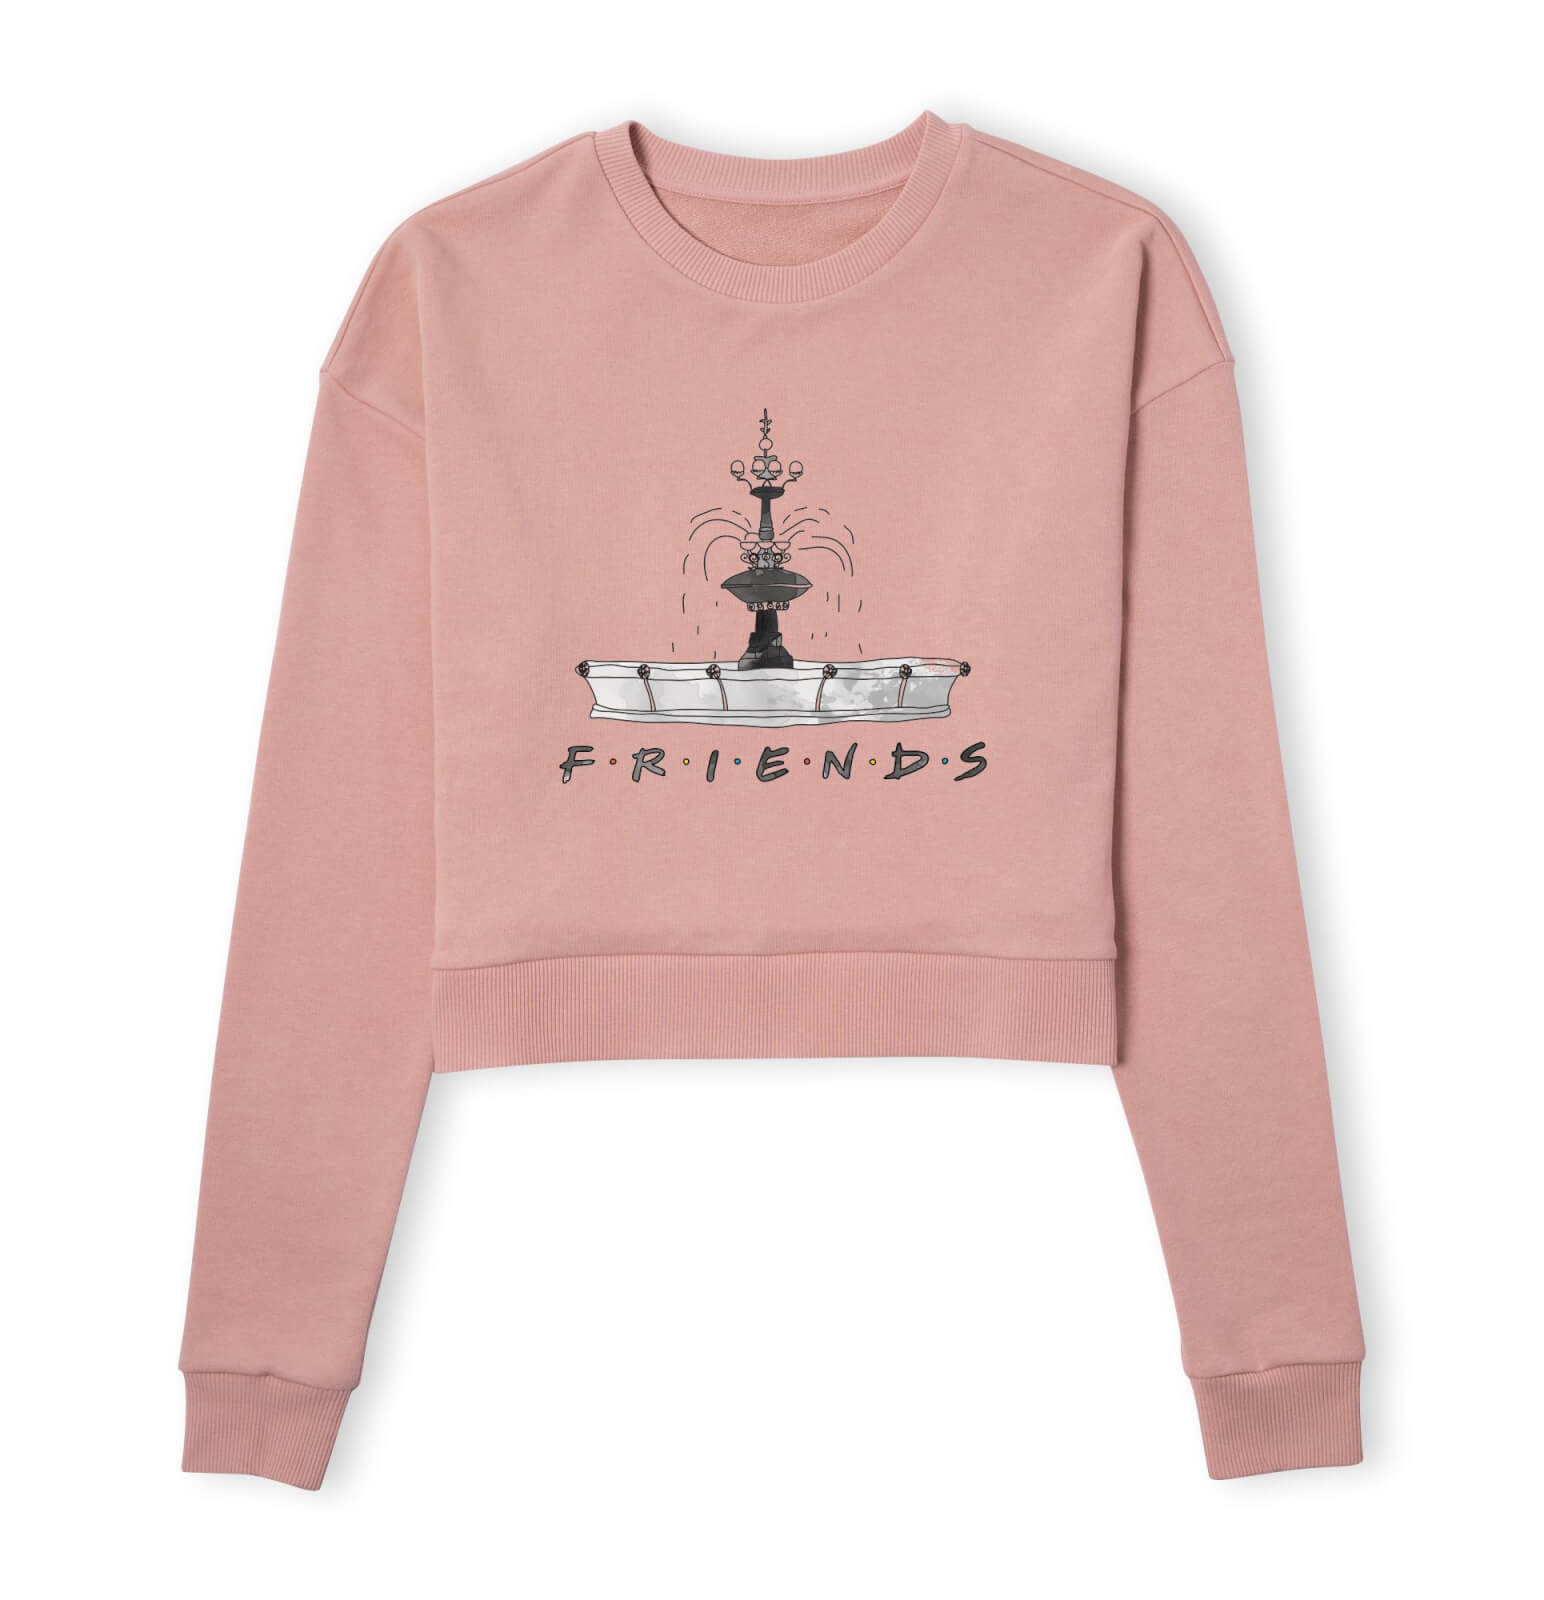 Friends Fountain Sketch Women's Cropped Sweatshirt - Dusty Pink - S - Dusty pink